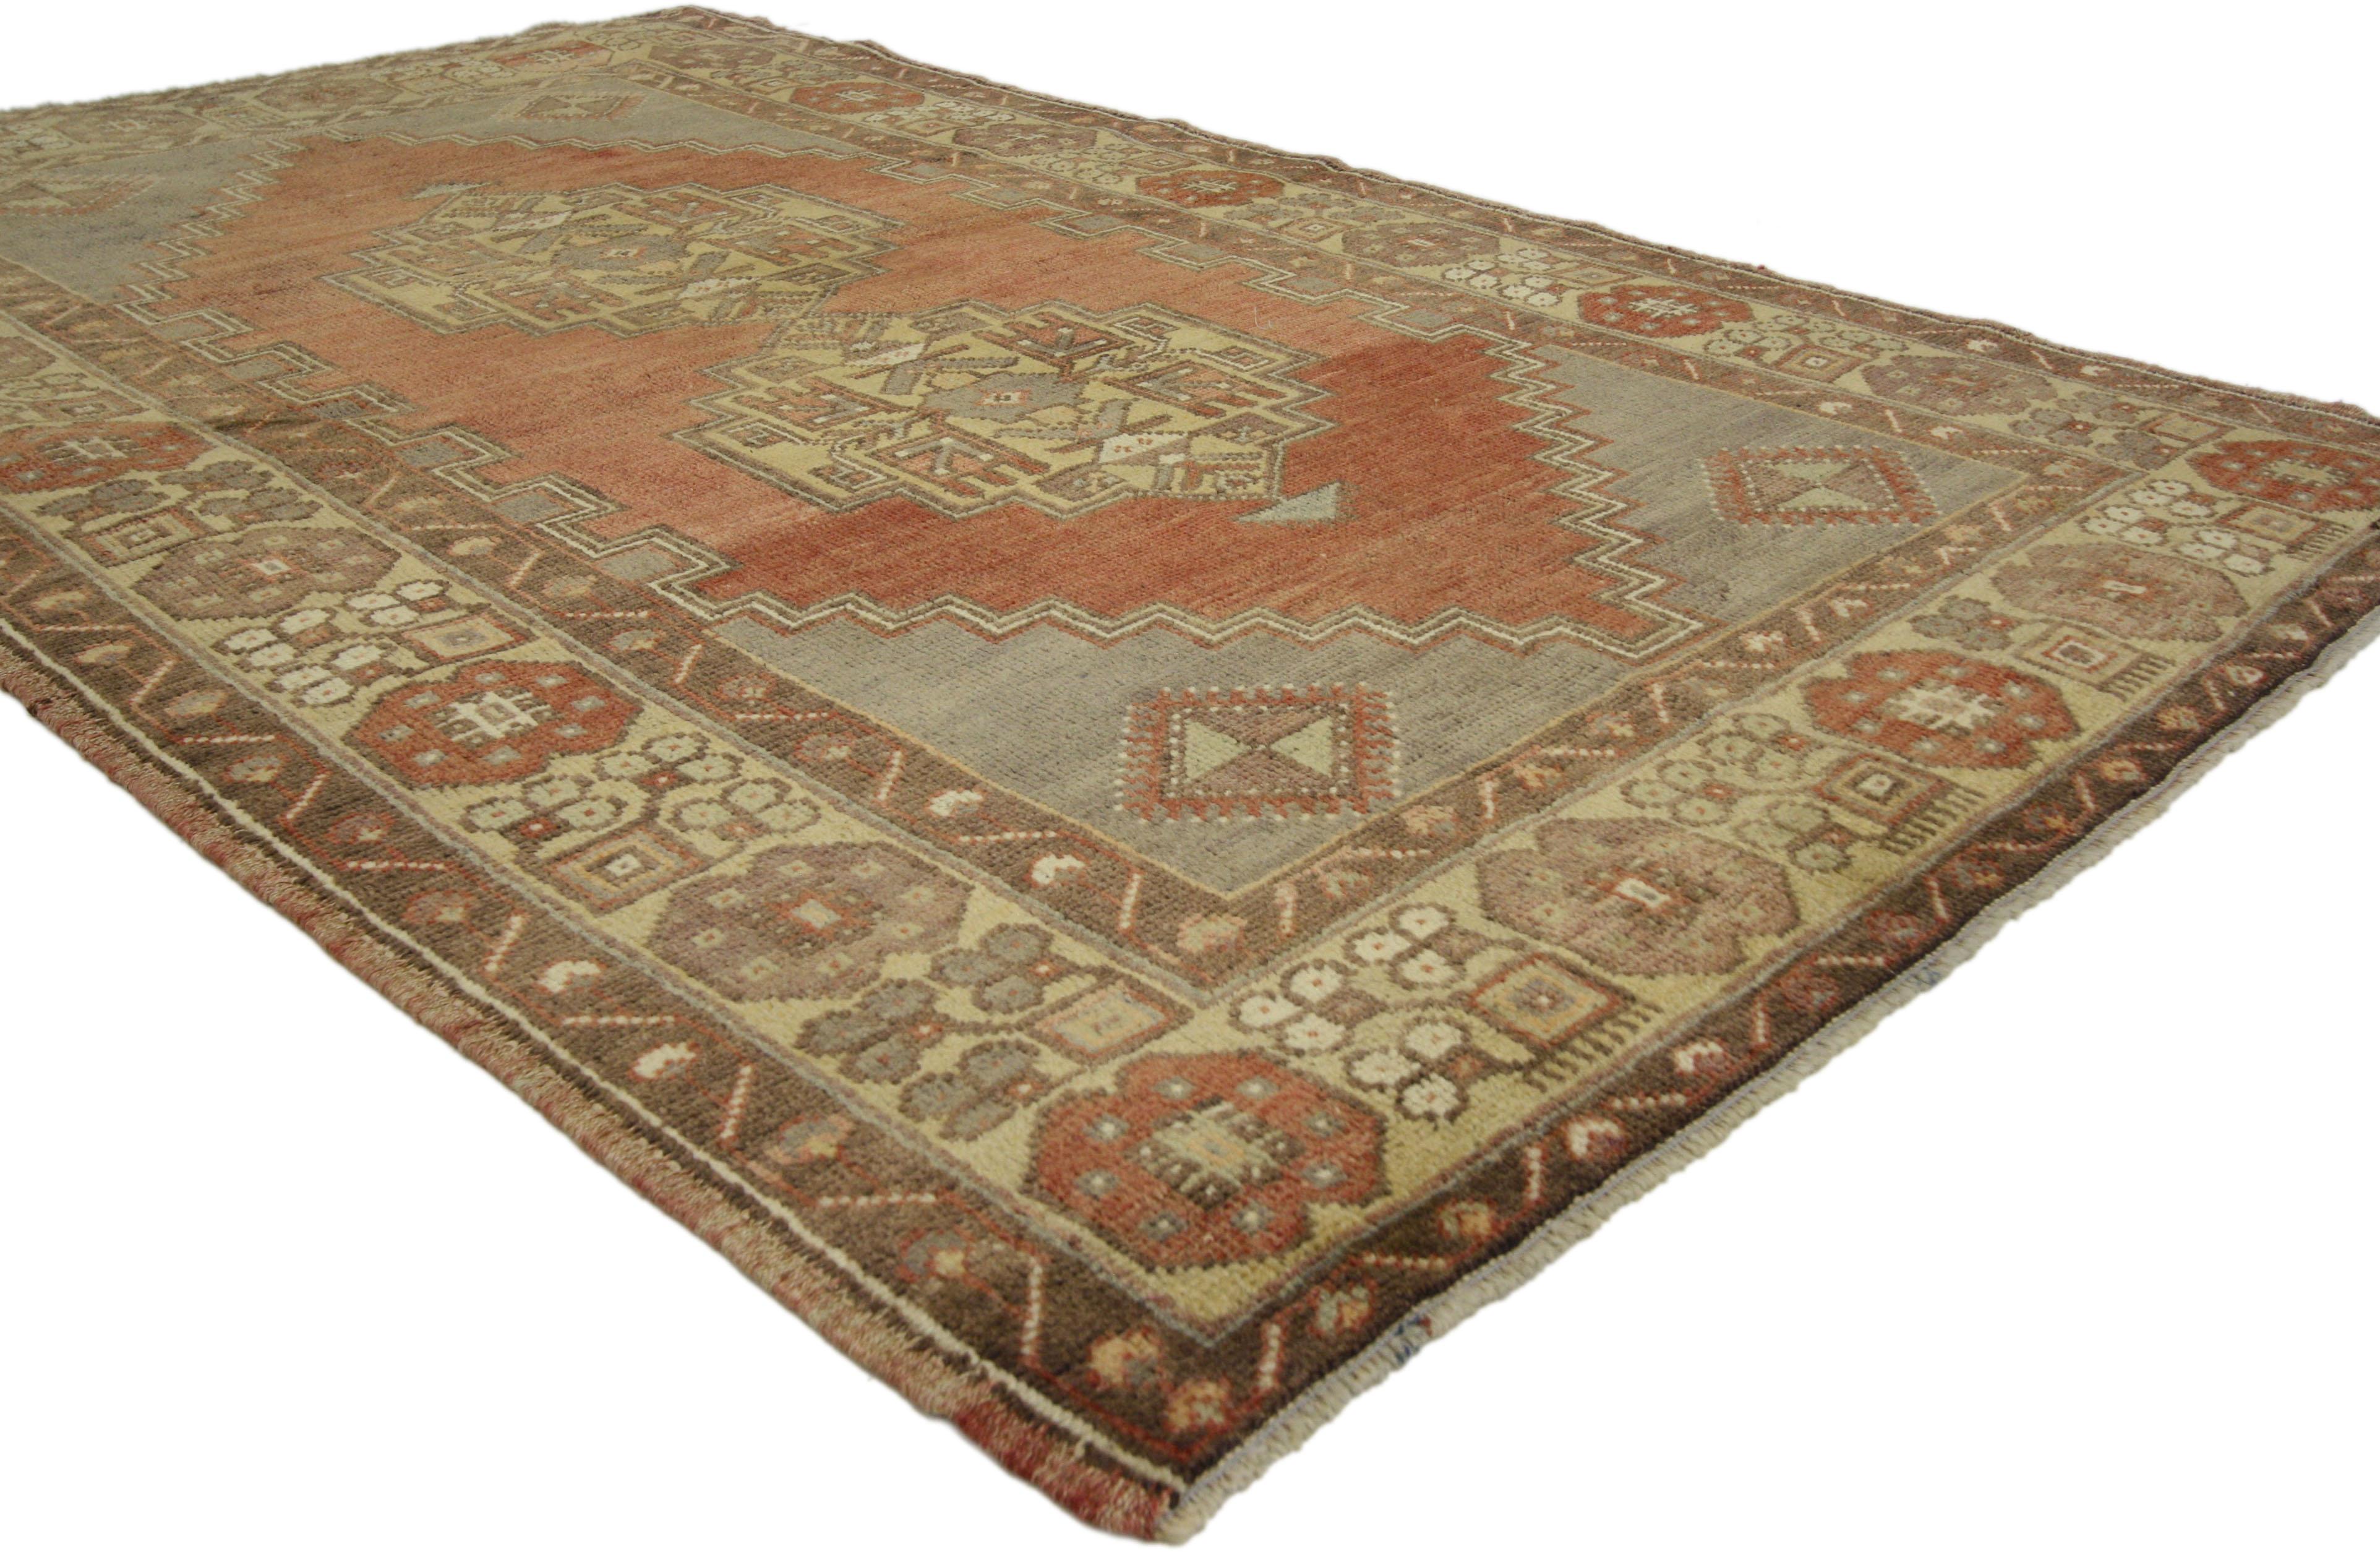 50078 Tapis d'accent vintage turc Oushak, tapis d'entrée ou de foyer. Ce tapis turc vintage en laine Oushak noué à la main présente un double médaillon à motifs tribaux dans un champ abrasif ouvert entouré d'une bordure géométrique. La palette de